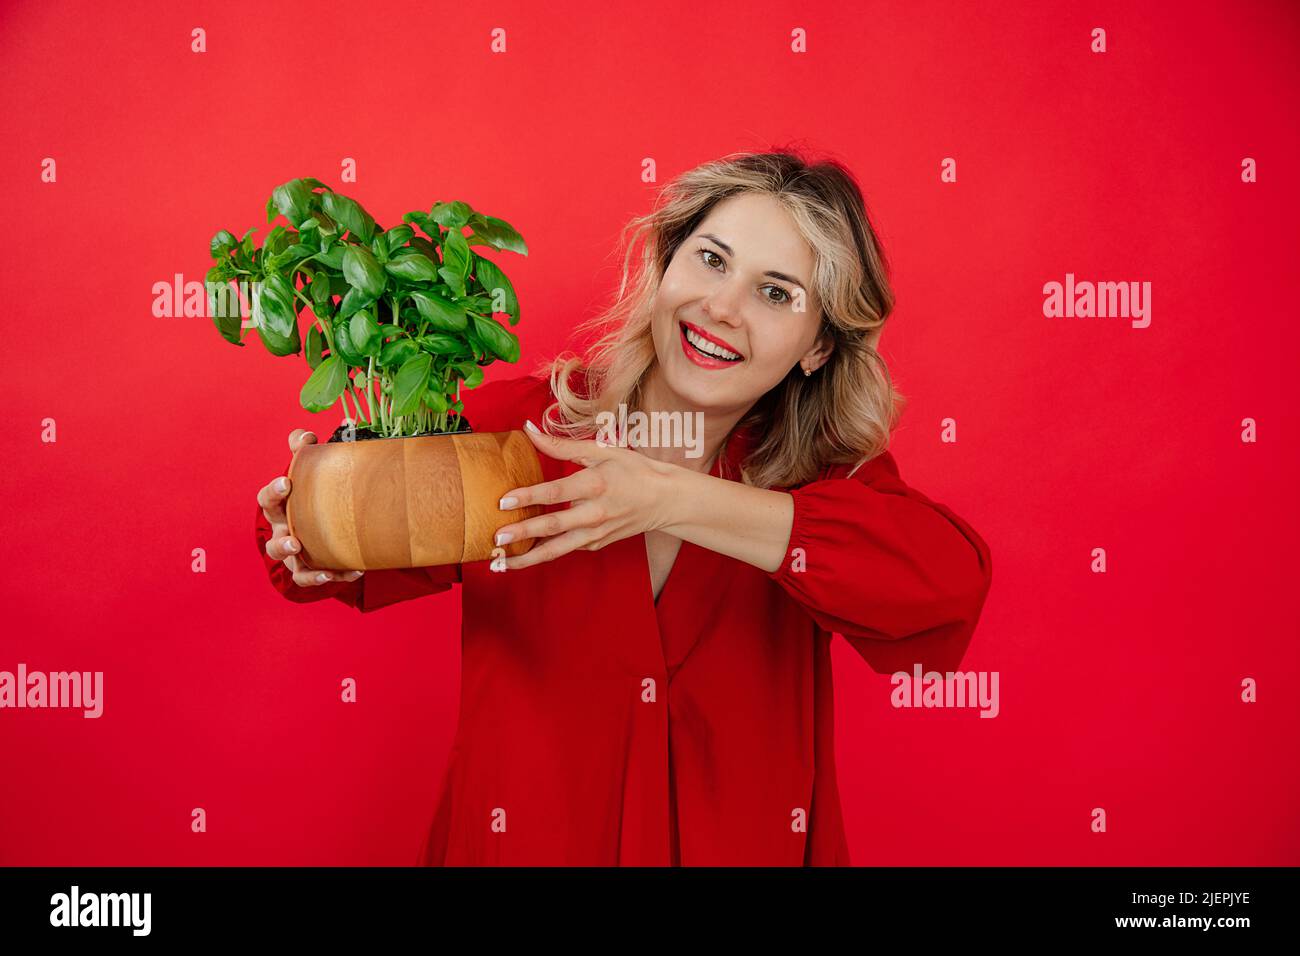 Donna bionda sorridente che sorride la pianta di basilico su sfondo rosso in studio, sorridendo il toothy sorriso, guardando la macchina fotografica Foto Stock